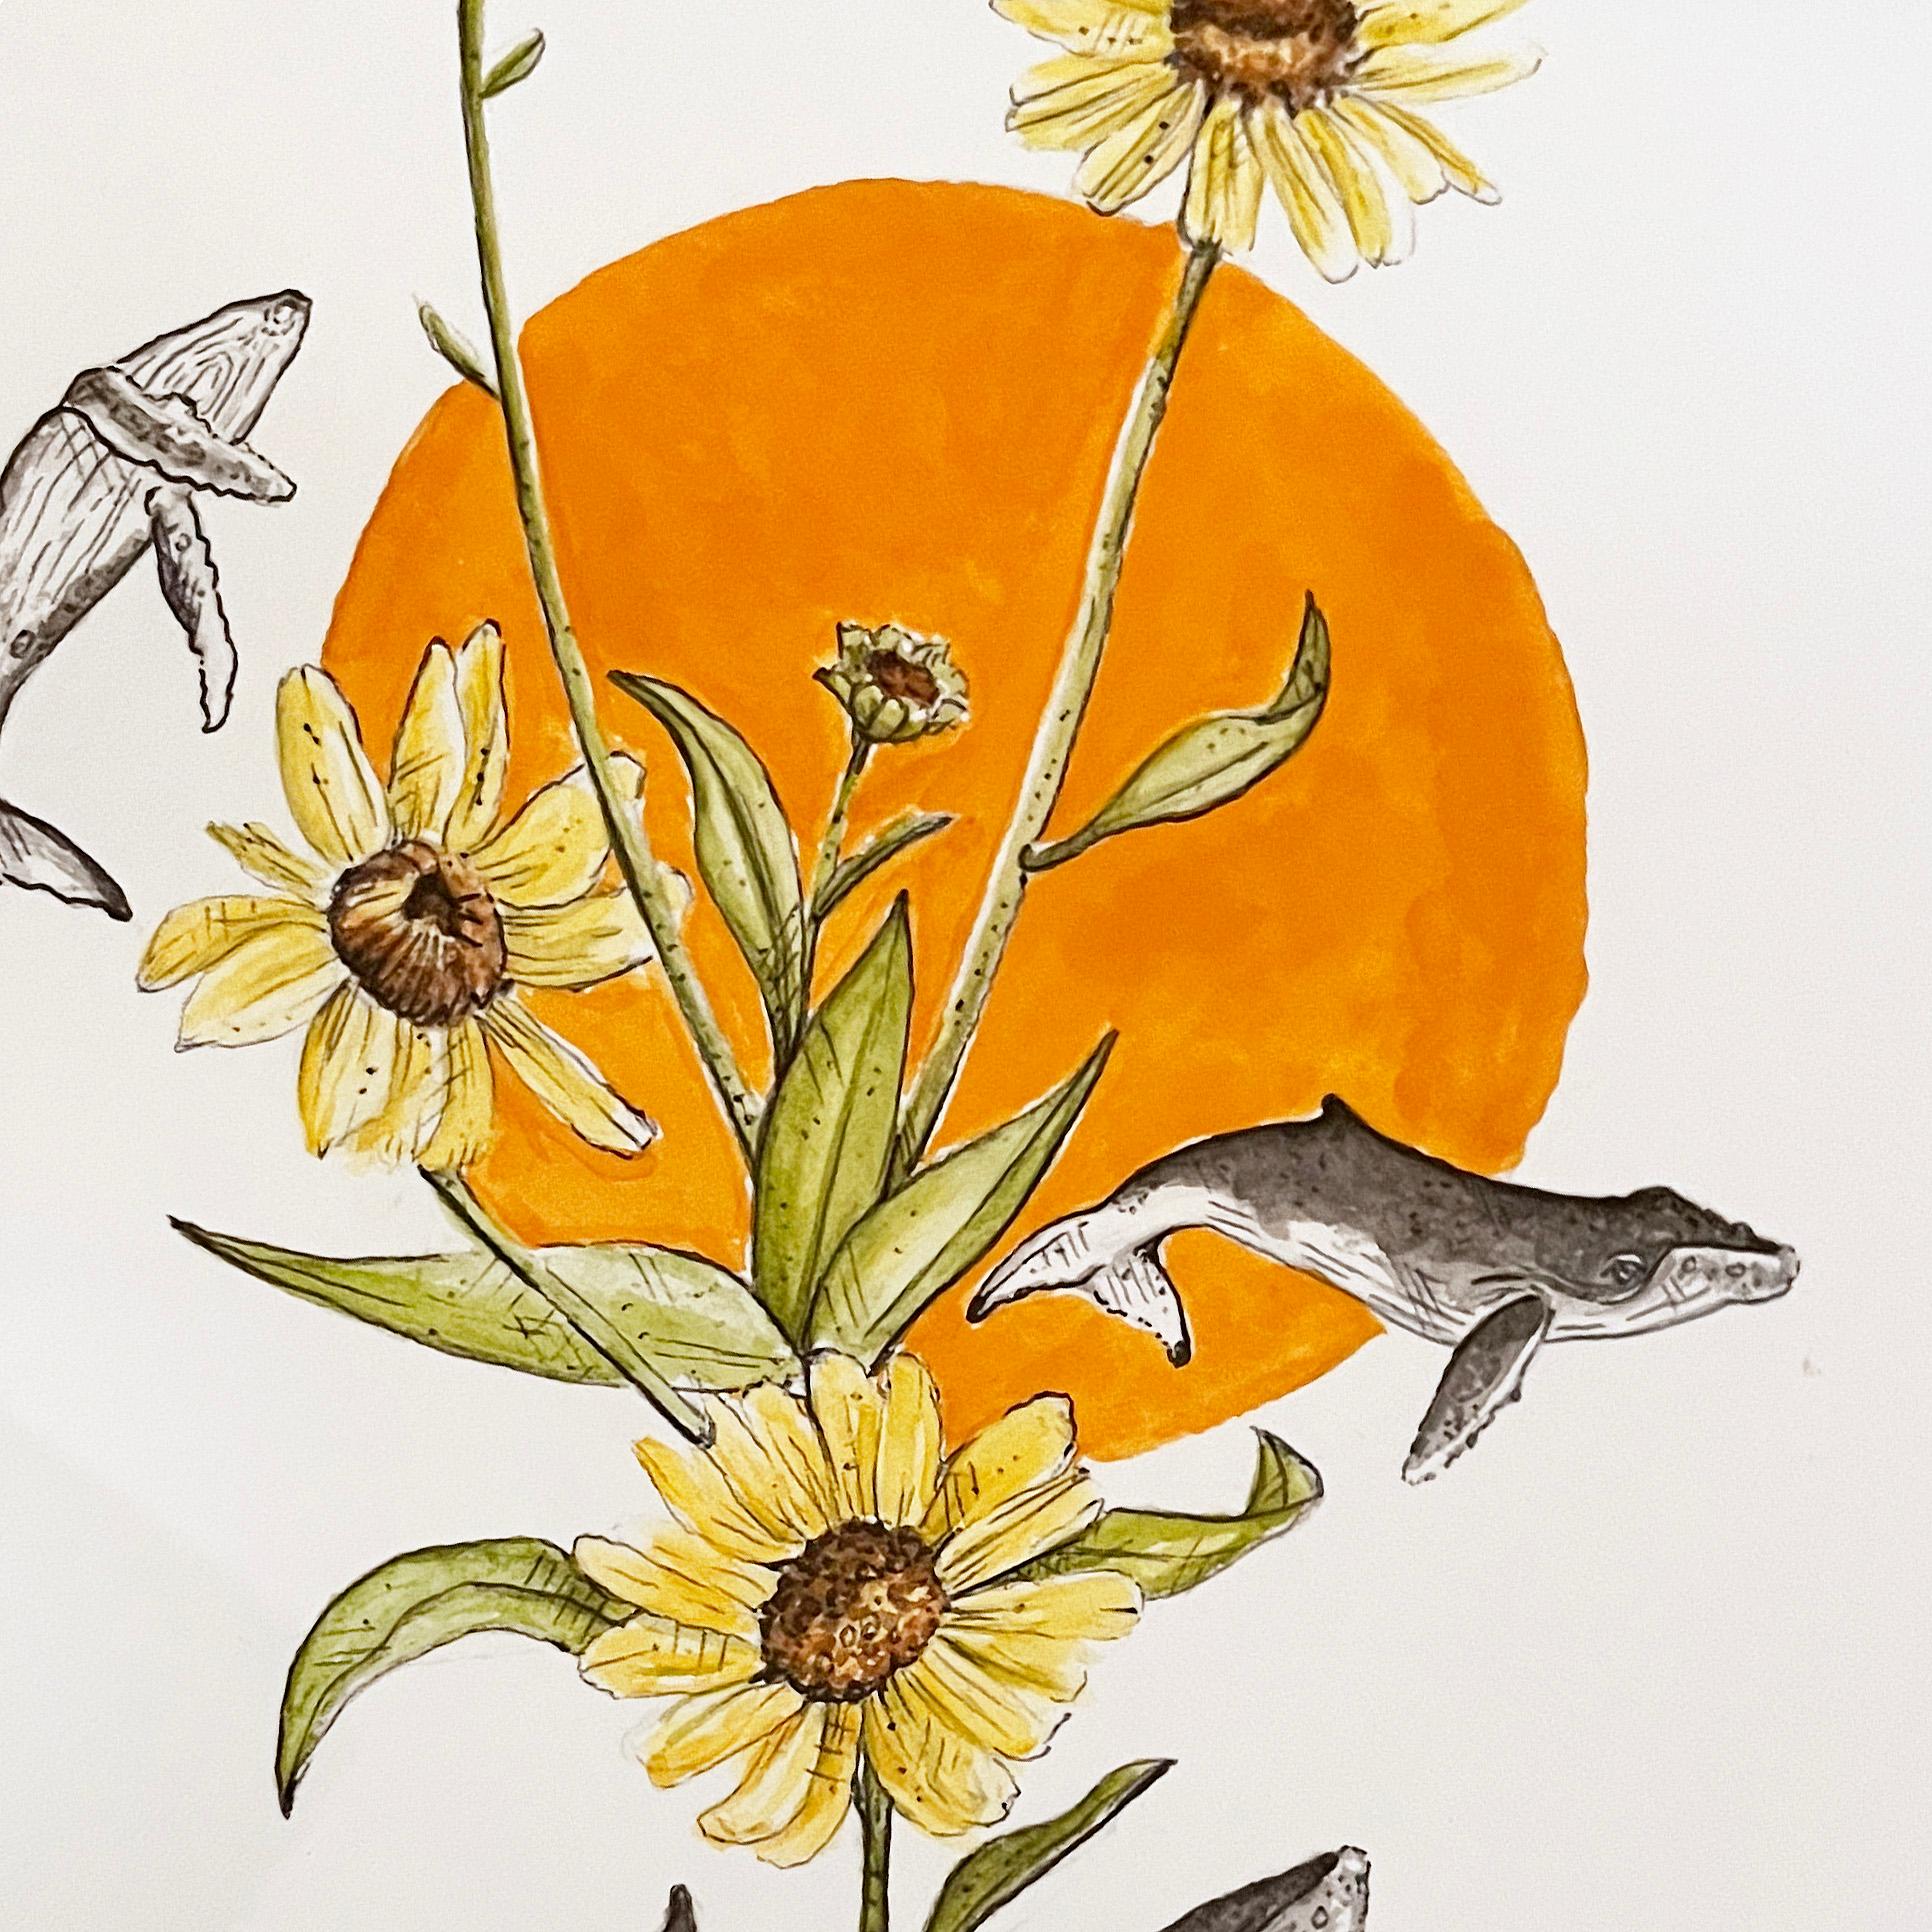 Illustrative Aquarell-Nature-Grafikkunst, „Ein Küsten-Sonnenblumen-Tänzer“, 2022 (Impressionismus), Art, von Marissa Quinn